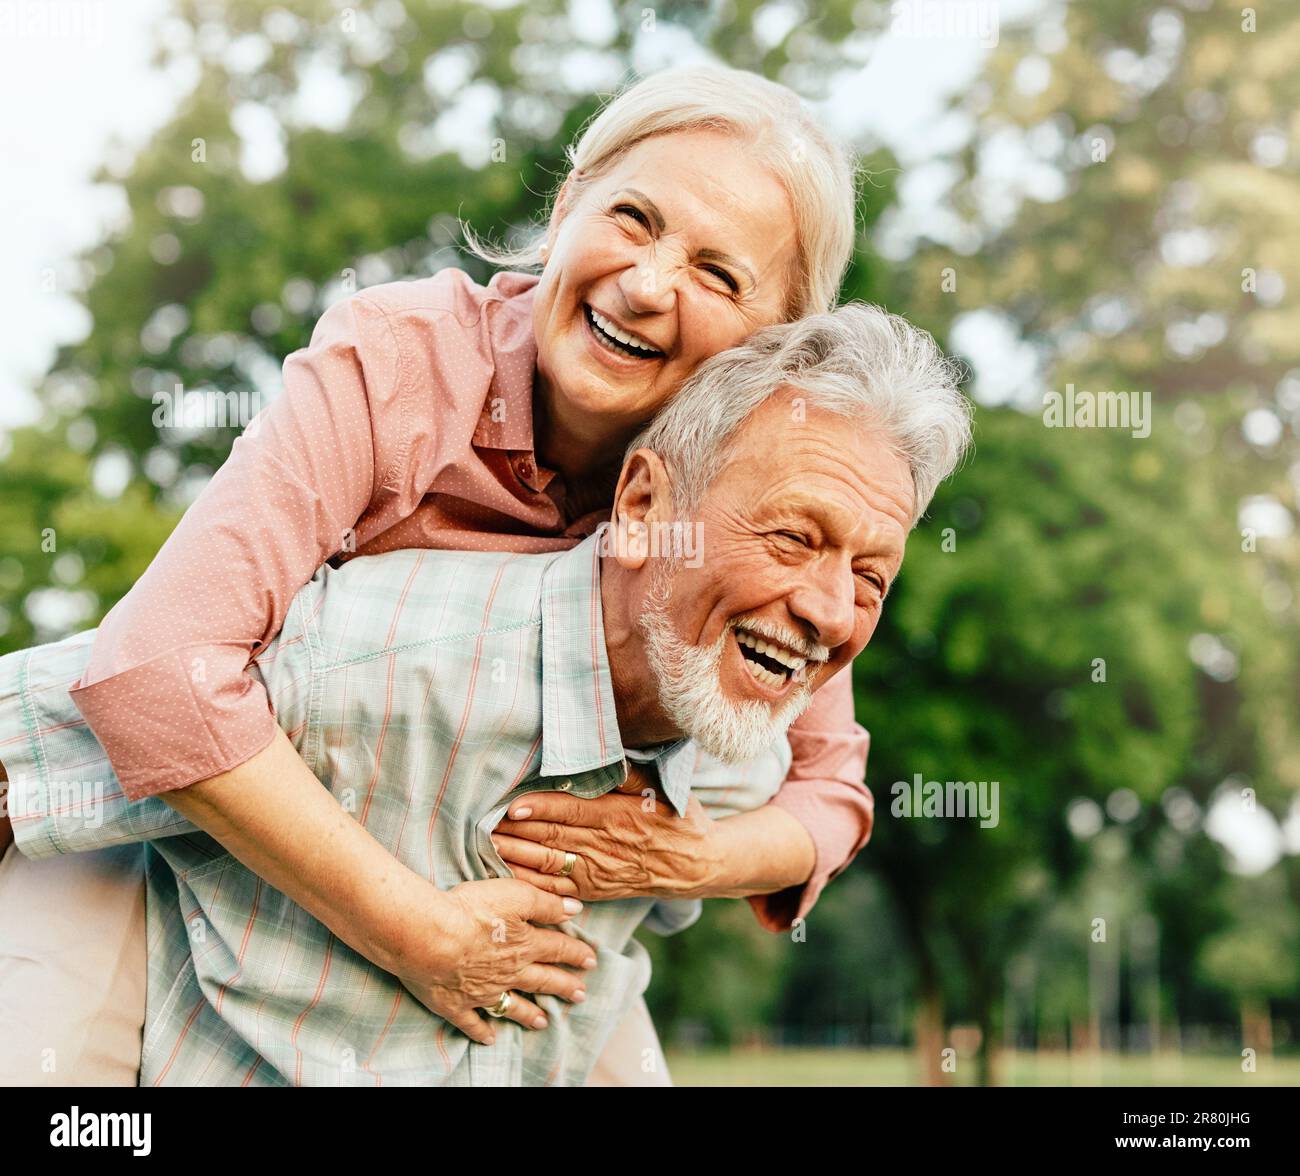 Glückliches aktives Seniorenpaar, das Spaß im Freien hat. Porträt eines älteren Ehepaares Stockfoto